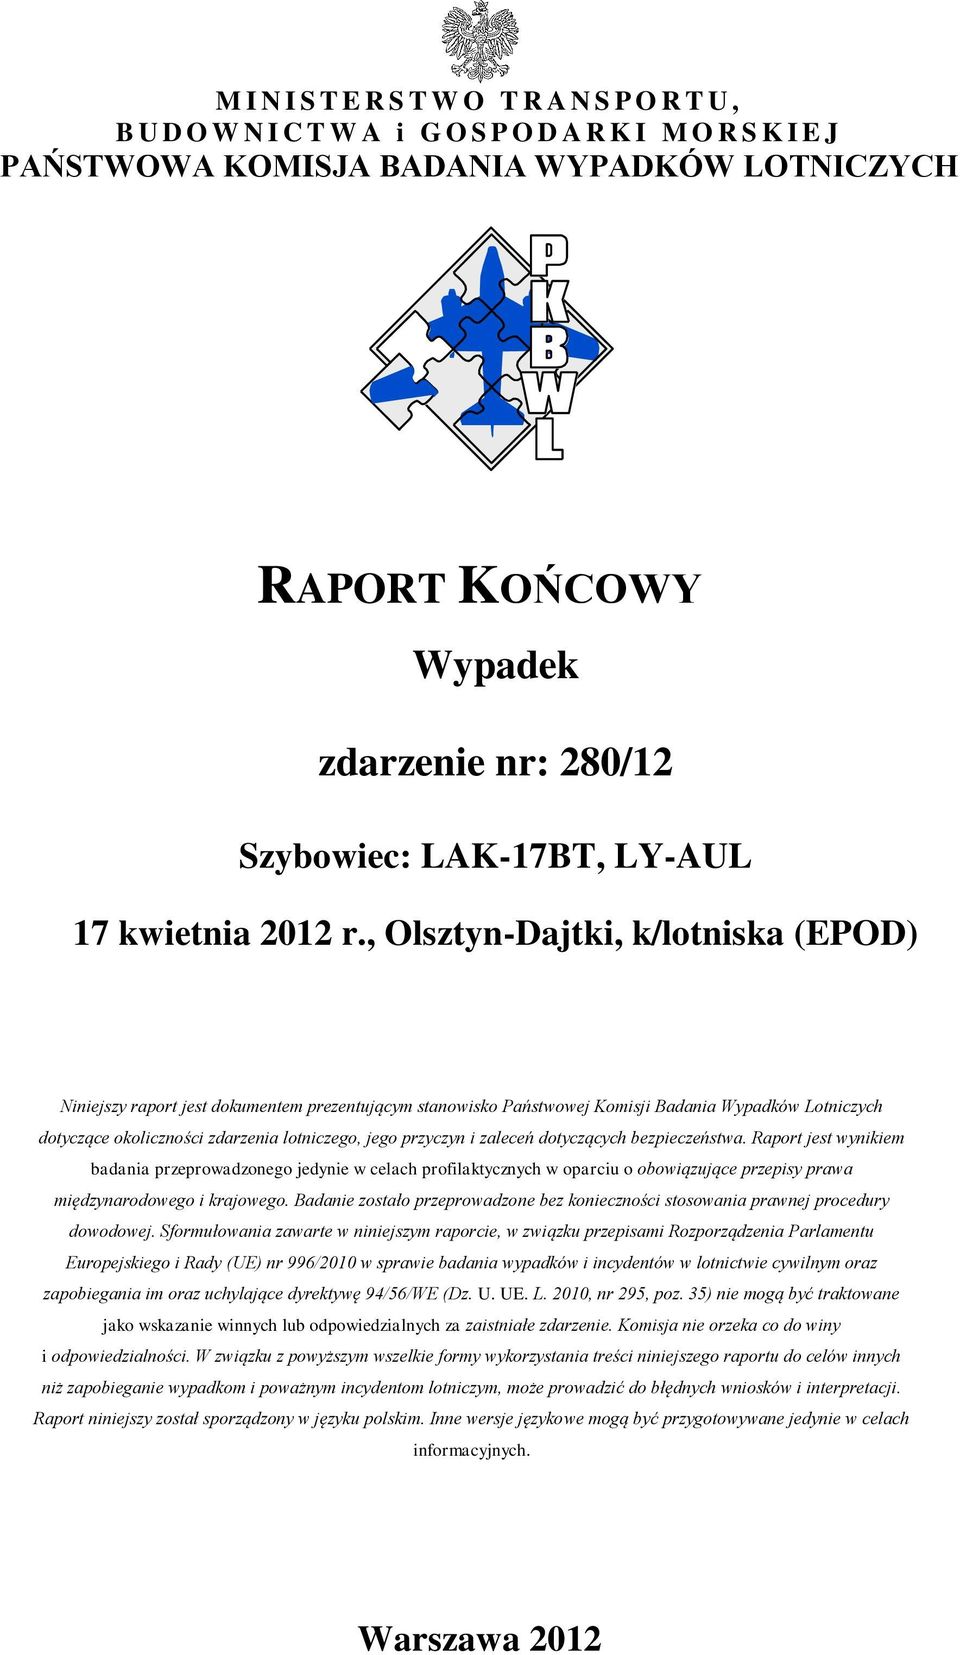 , Olsztyn-Dajtki, k/lotniska (EPOD) Niniejszy raport jest dokumentem prezentującym stanowisko Państwowej Komisji Badania Wypadków Lotniczych dotyczące okoliczności zdarzenia lotniczego, jego przyczyn